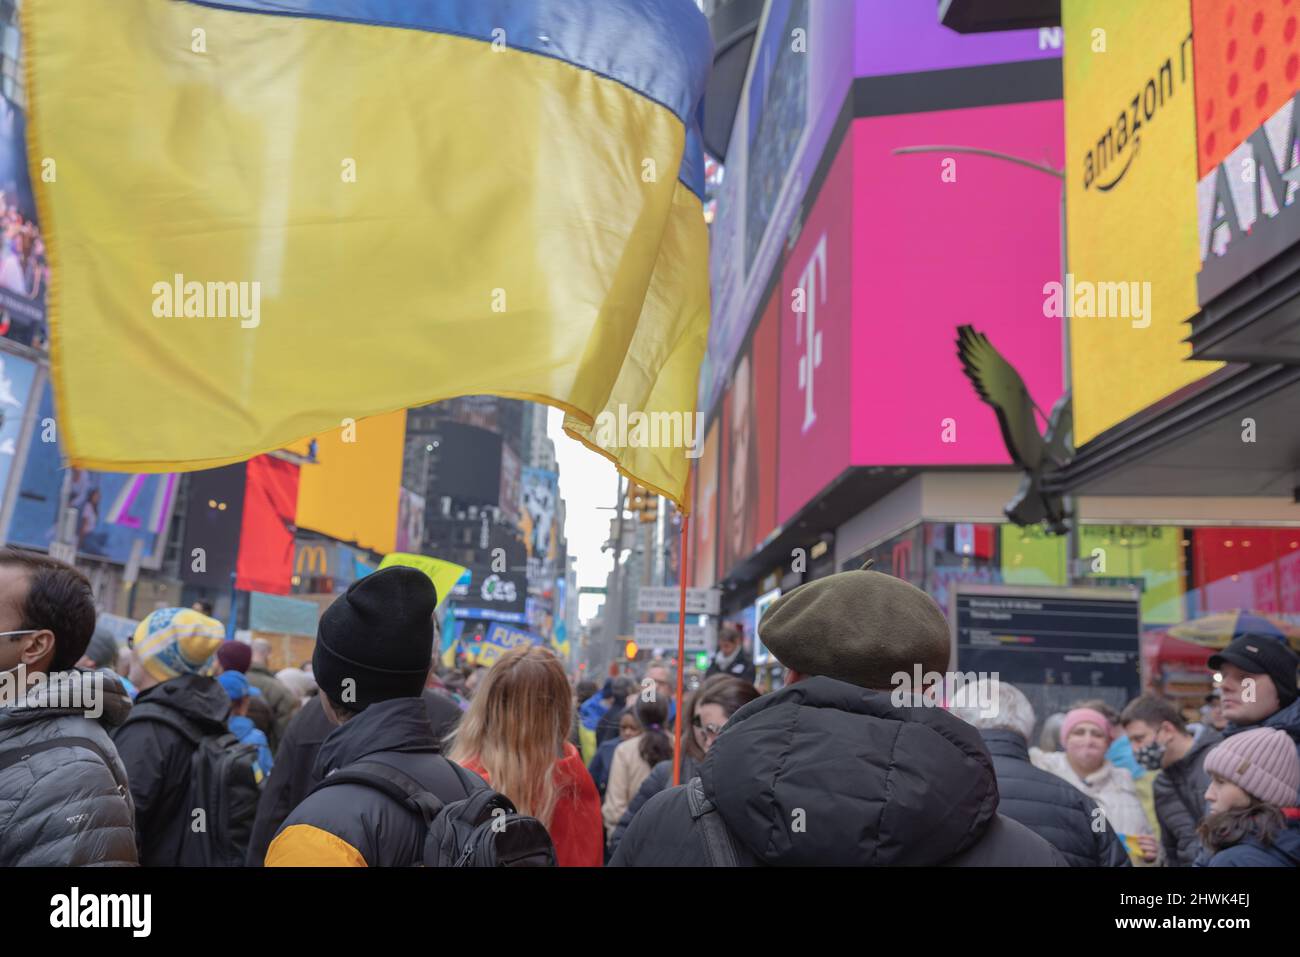 NEW YORK, N.Y. – 5 marzo 2022: Una persona detiene una bandiera Ucraina a Times Square durante una protesta contro l’invasione dell’Ucraina da parte della Russia. Foto Stock